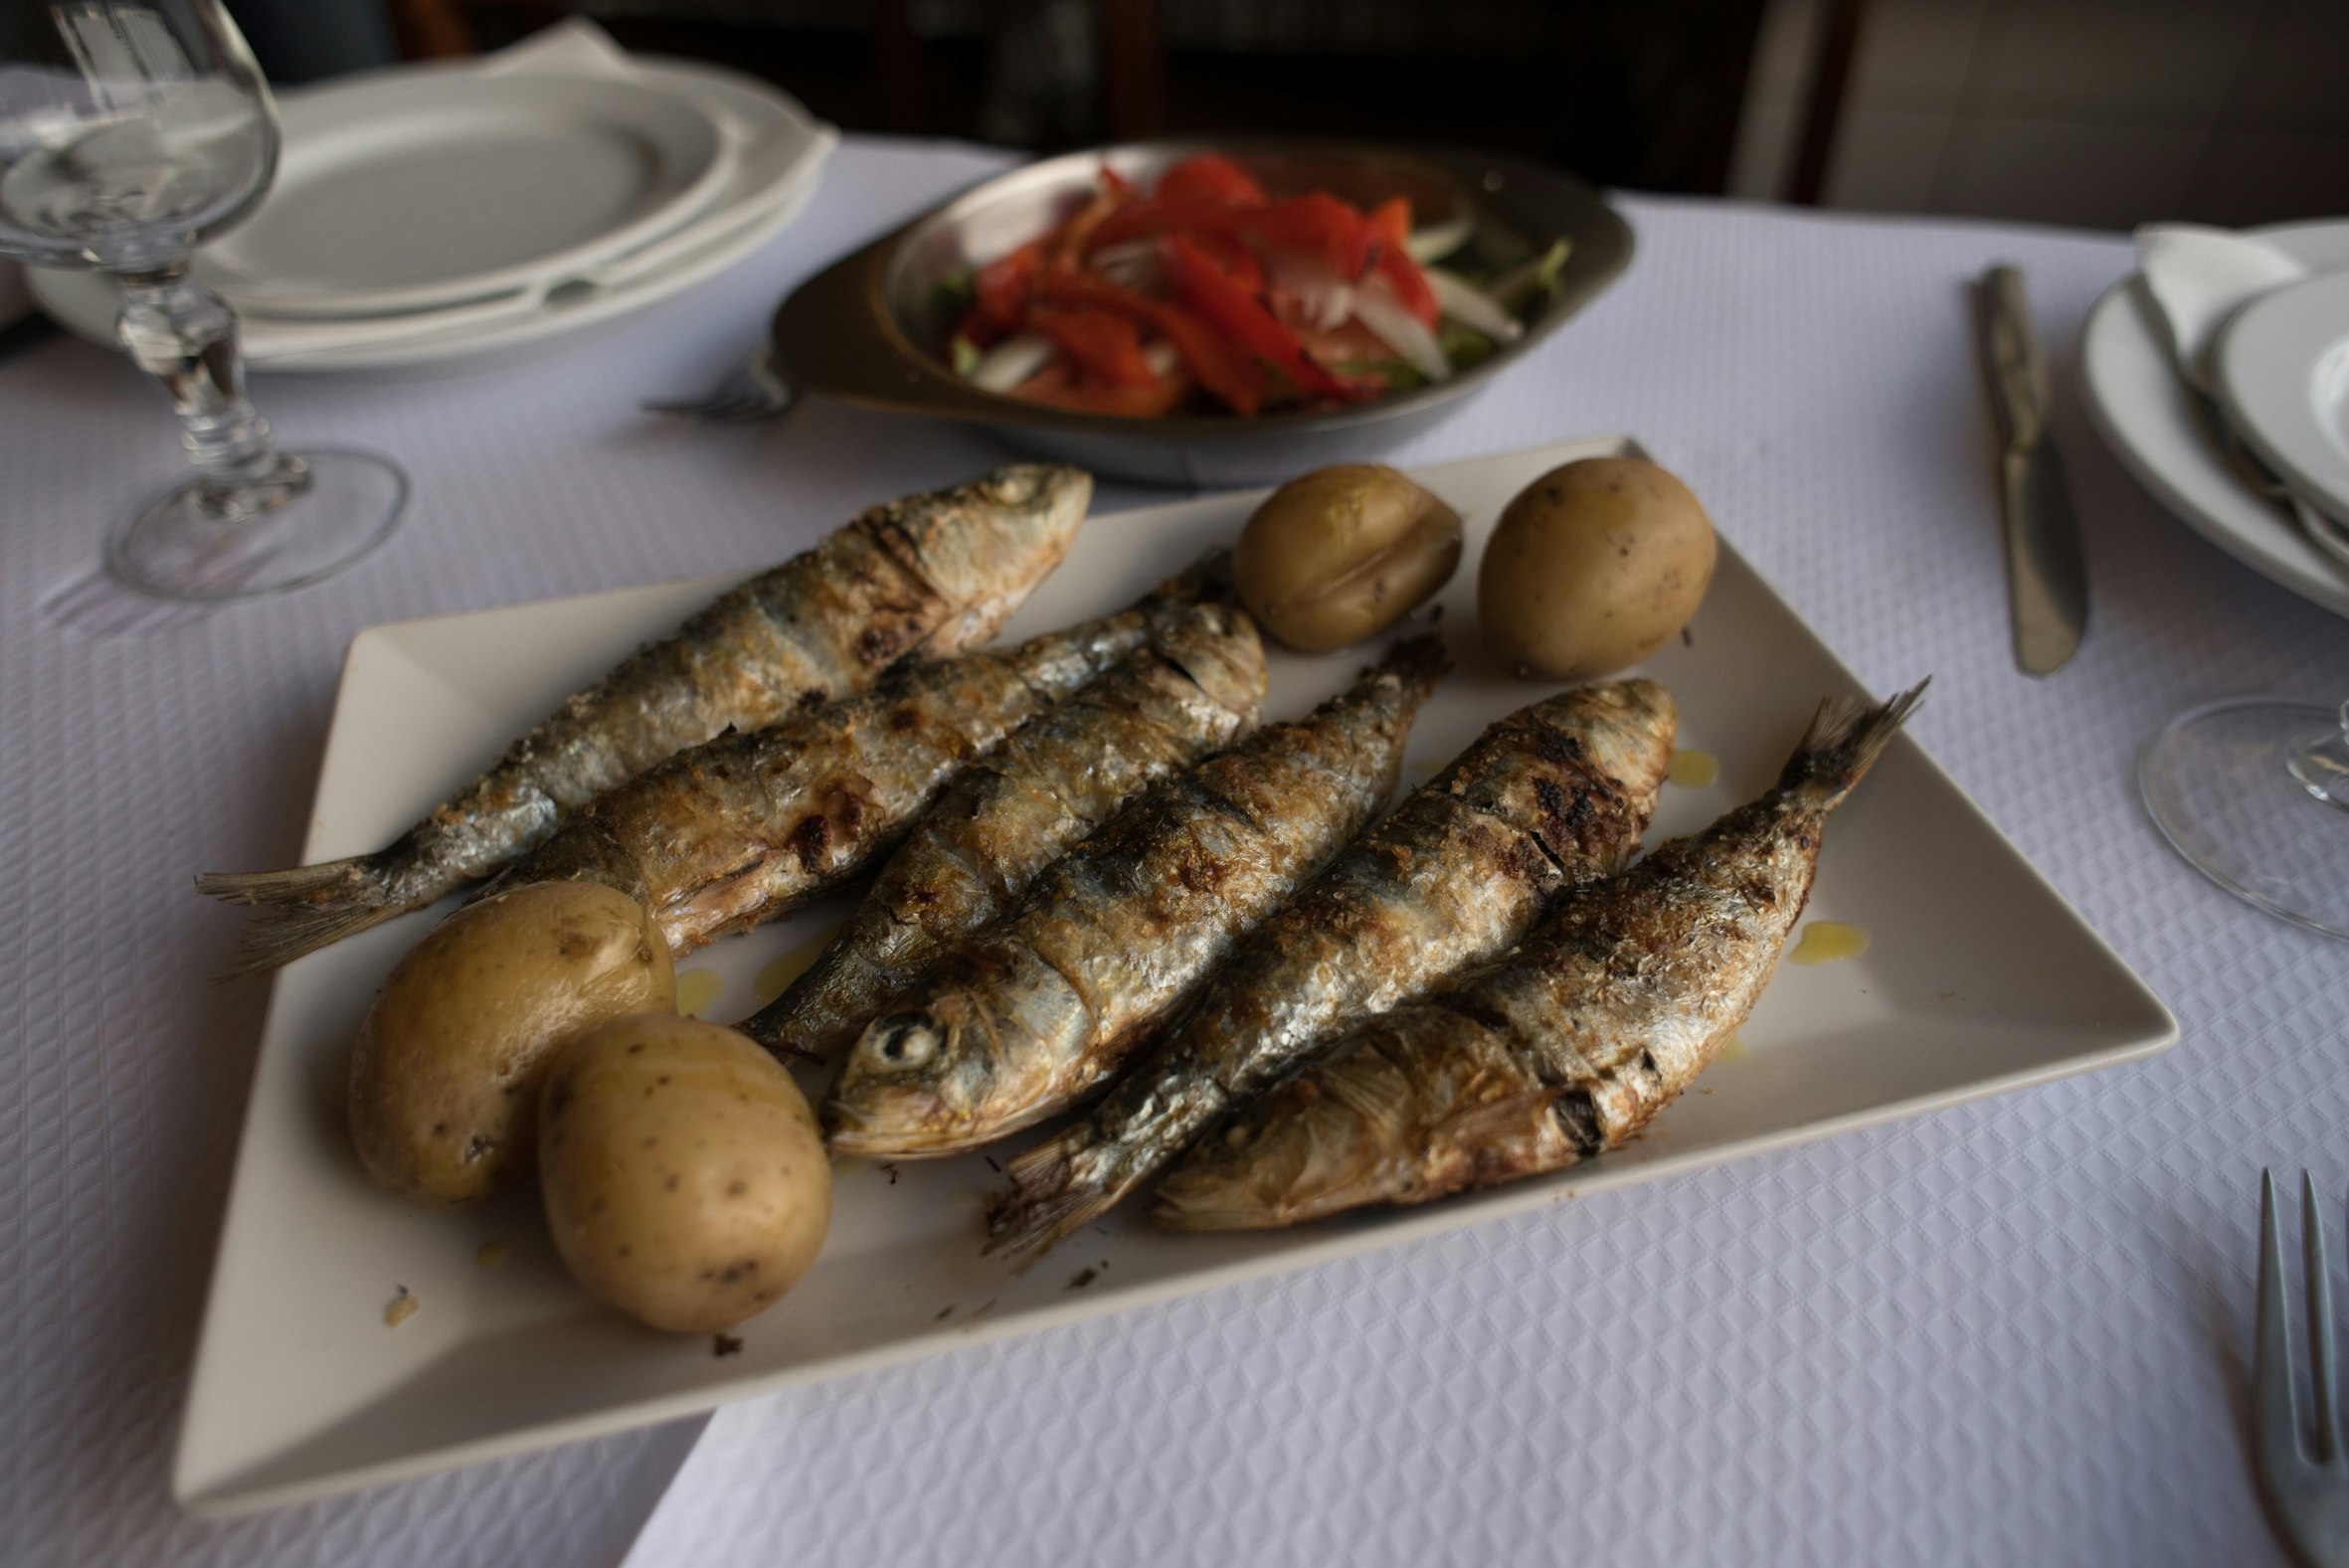 En tallrik med grillade sardiner med babypotatis och sallad vid sidan, serverad på ett bord med en vit duk